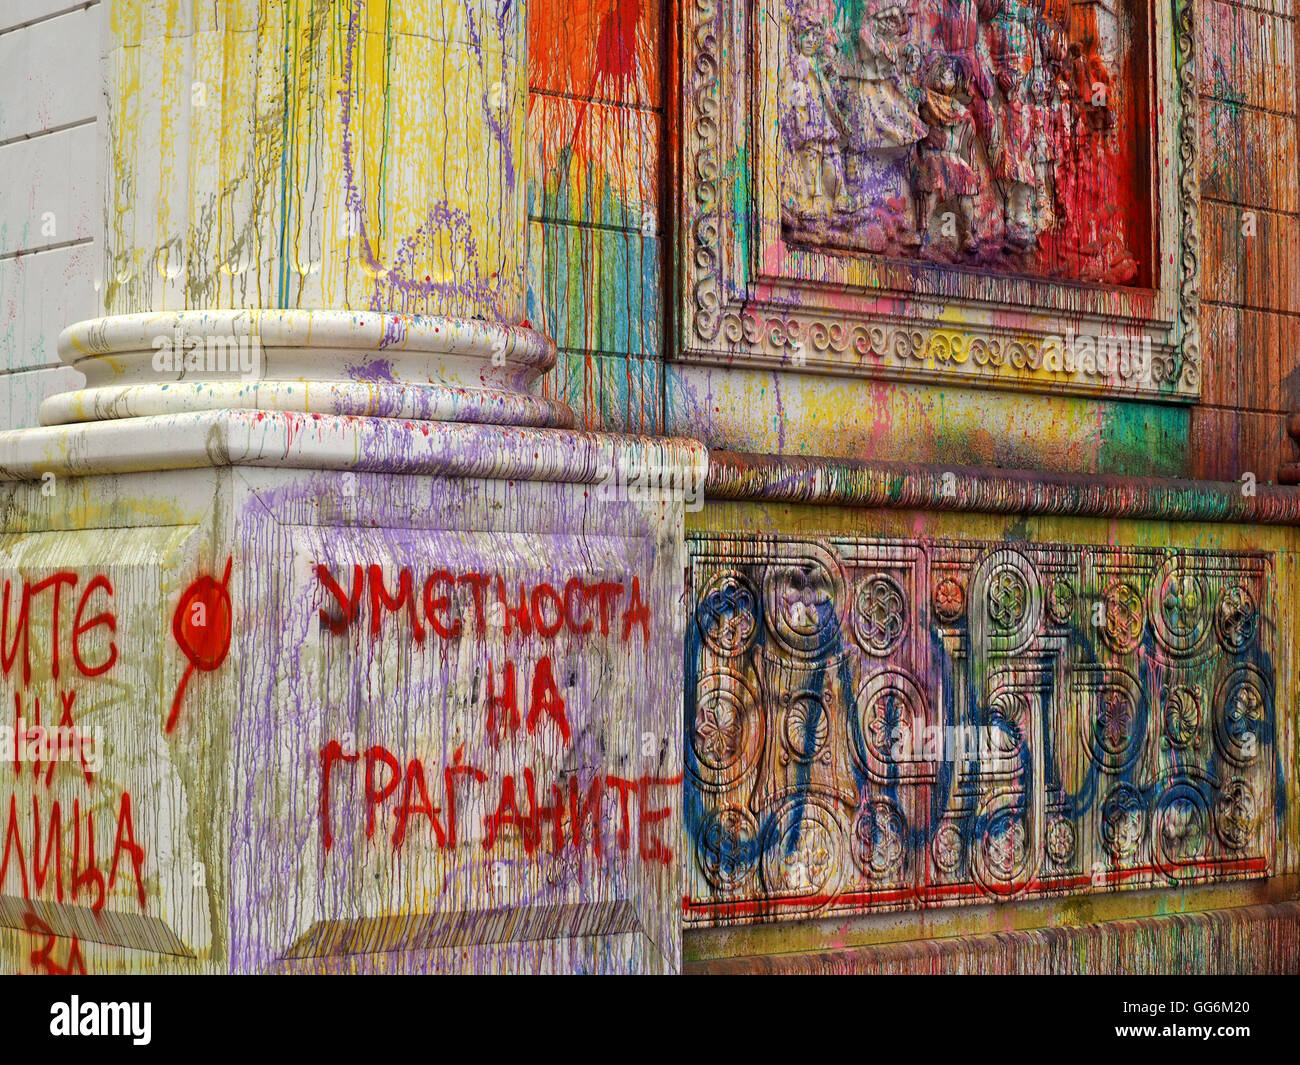 Edificio público pintarrajeada con graffiti y paintbombs en Skopje, Macedonia en la protesta pacífica contra el libertinaje del estado Foto de stock